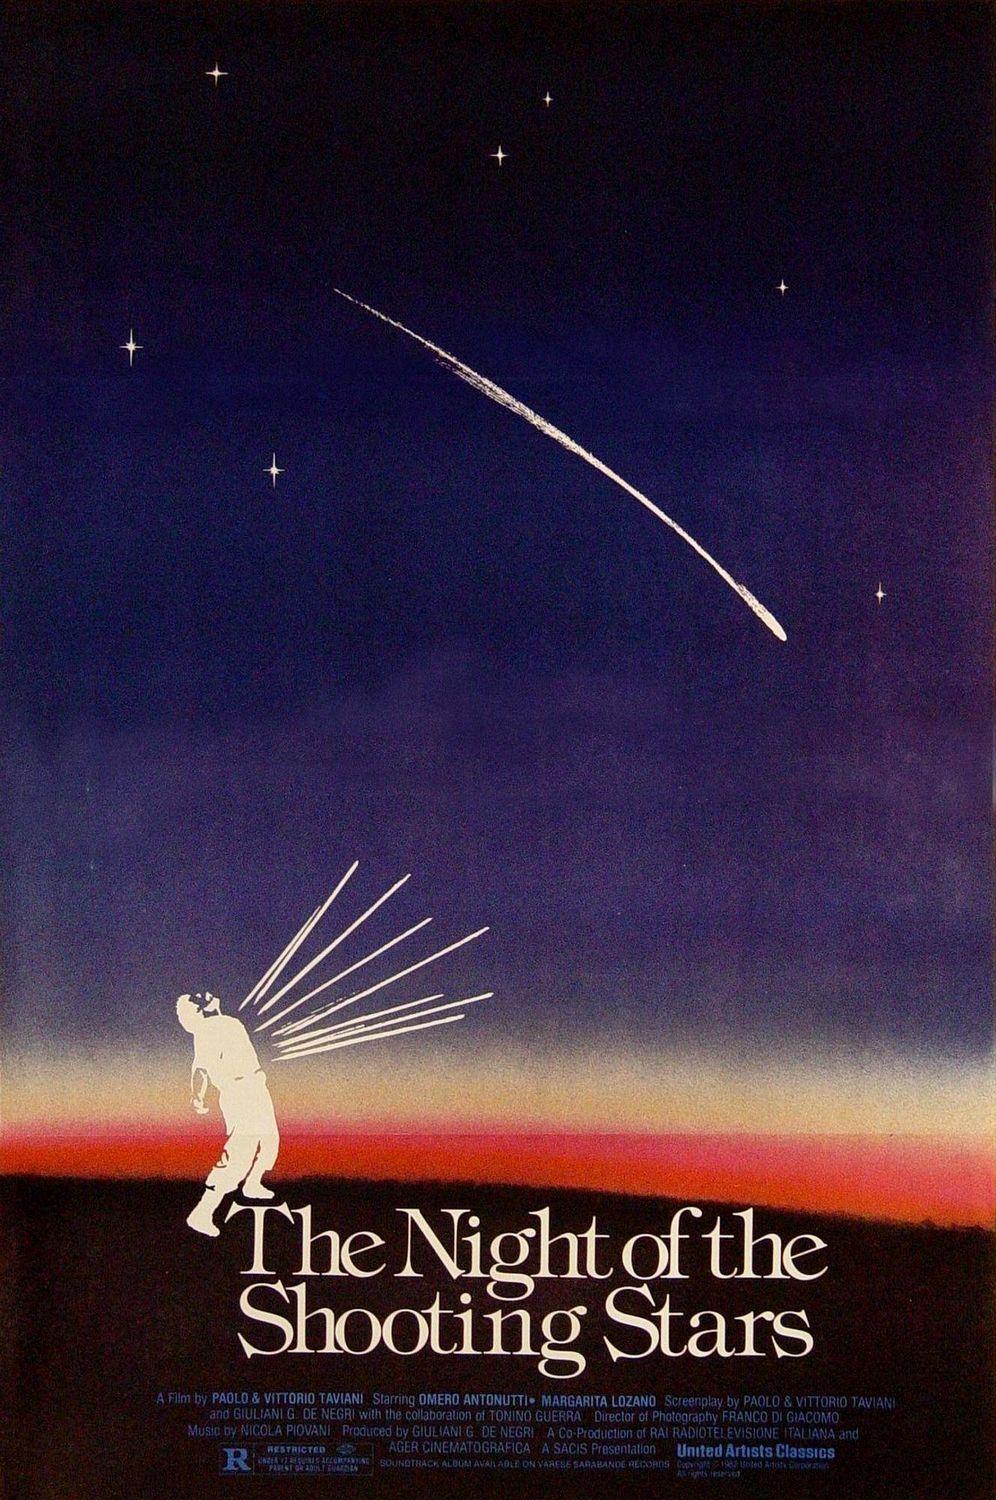 Постер фильма Ночь святого Лоренцо | notte di San Lorenzo